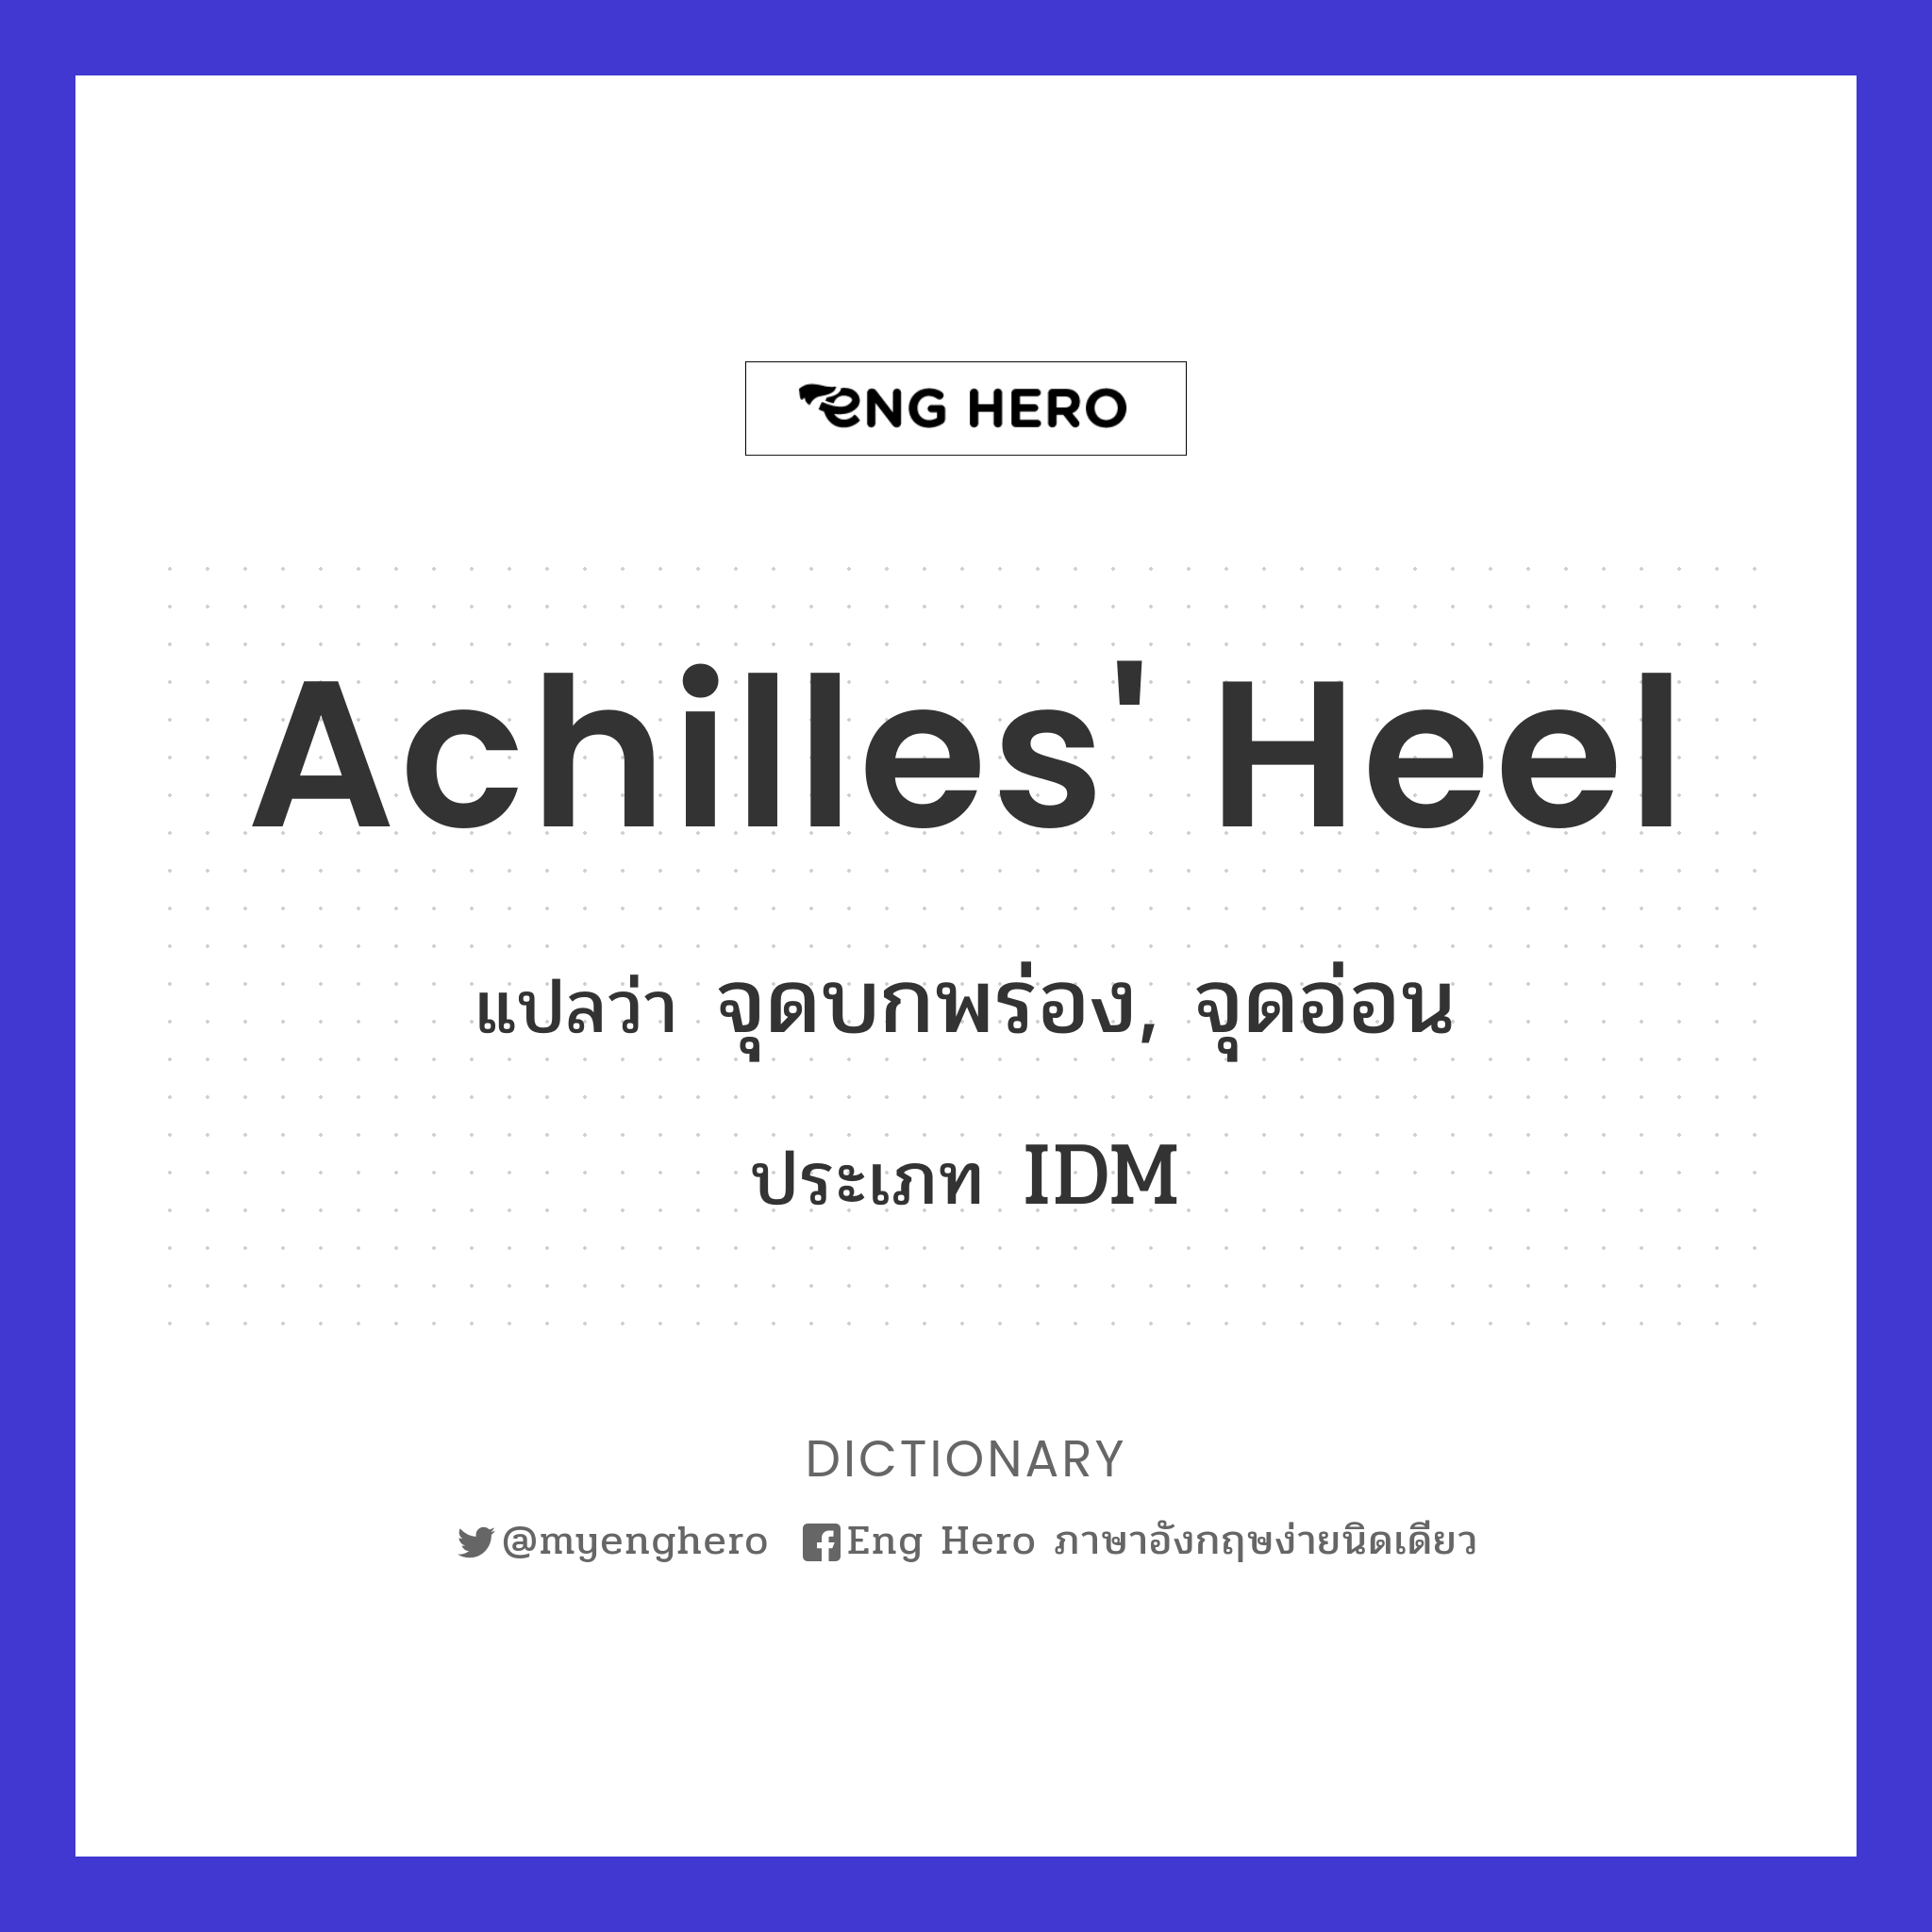 Achilles' heel